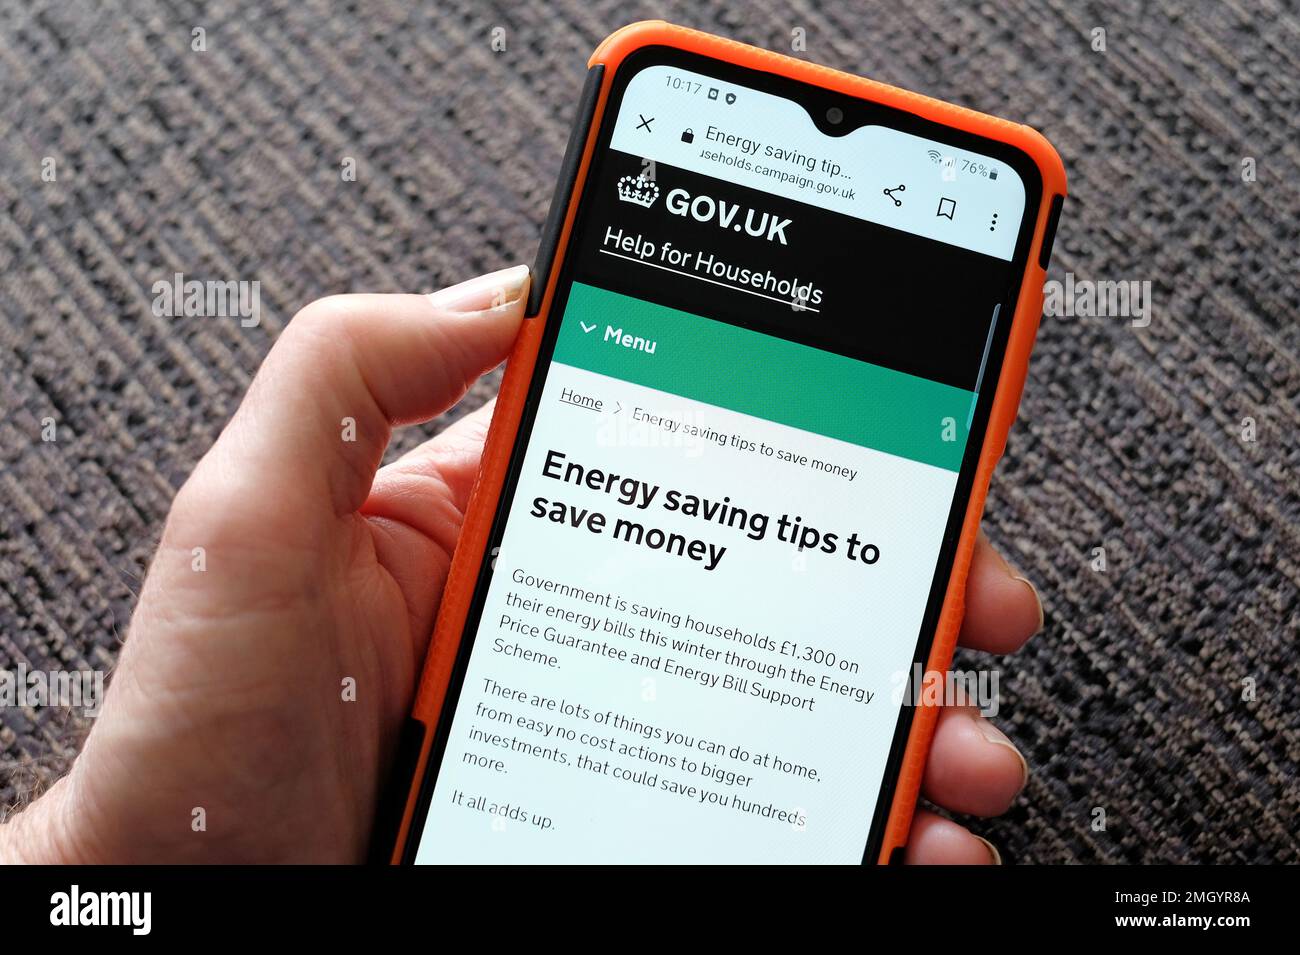 gov.uk Website-Hilfe für Haushalte Energiespartipps, um Geld zu sparen Stockfoto